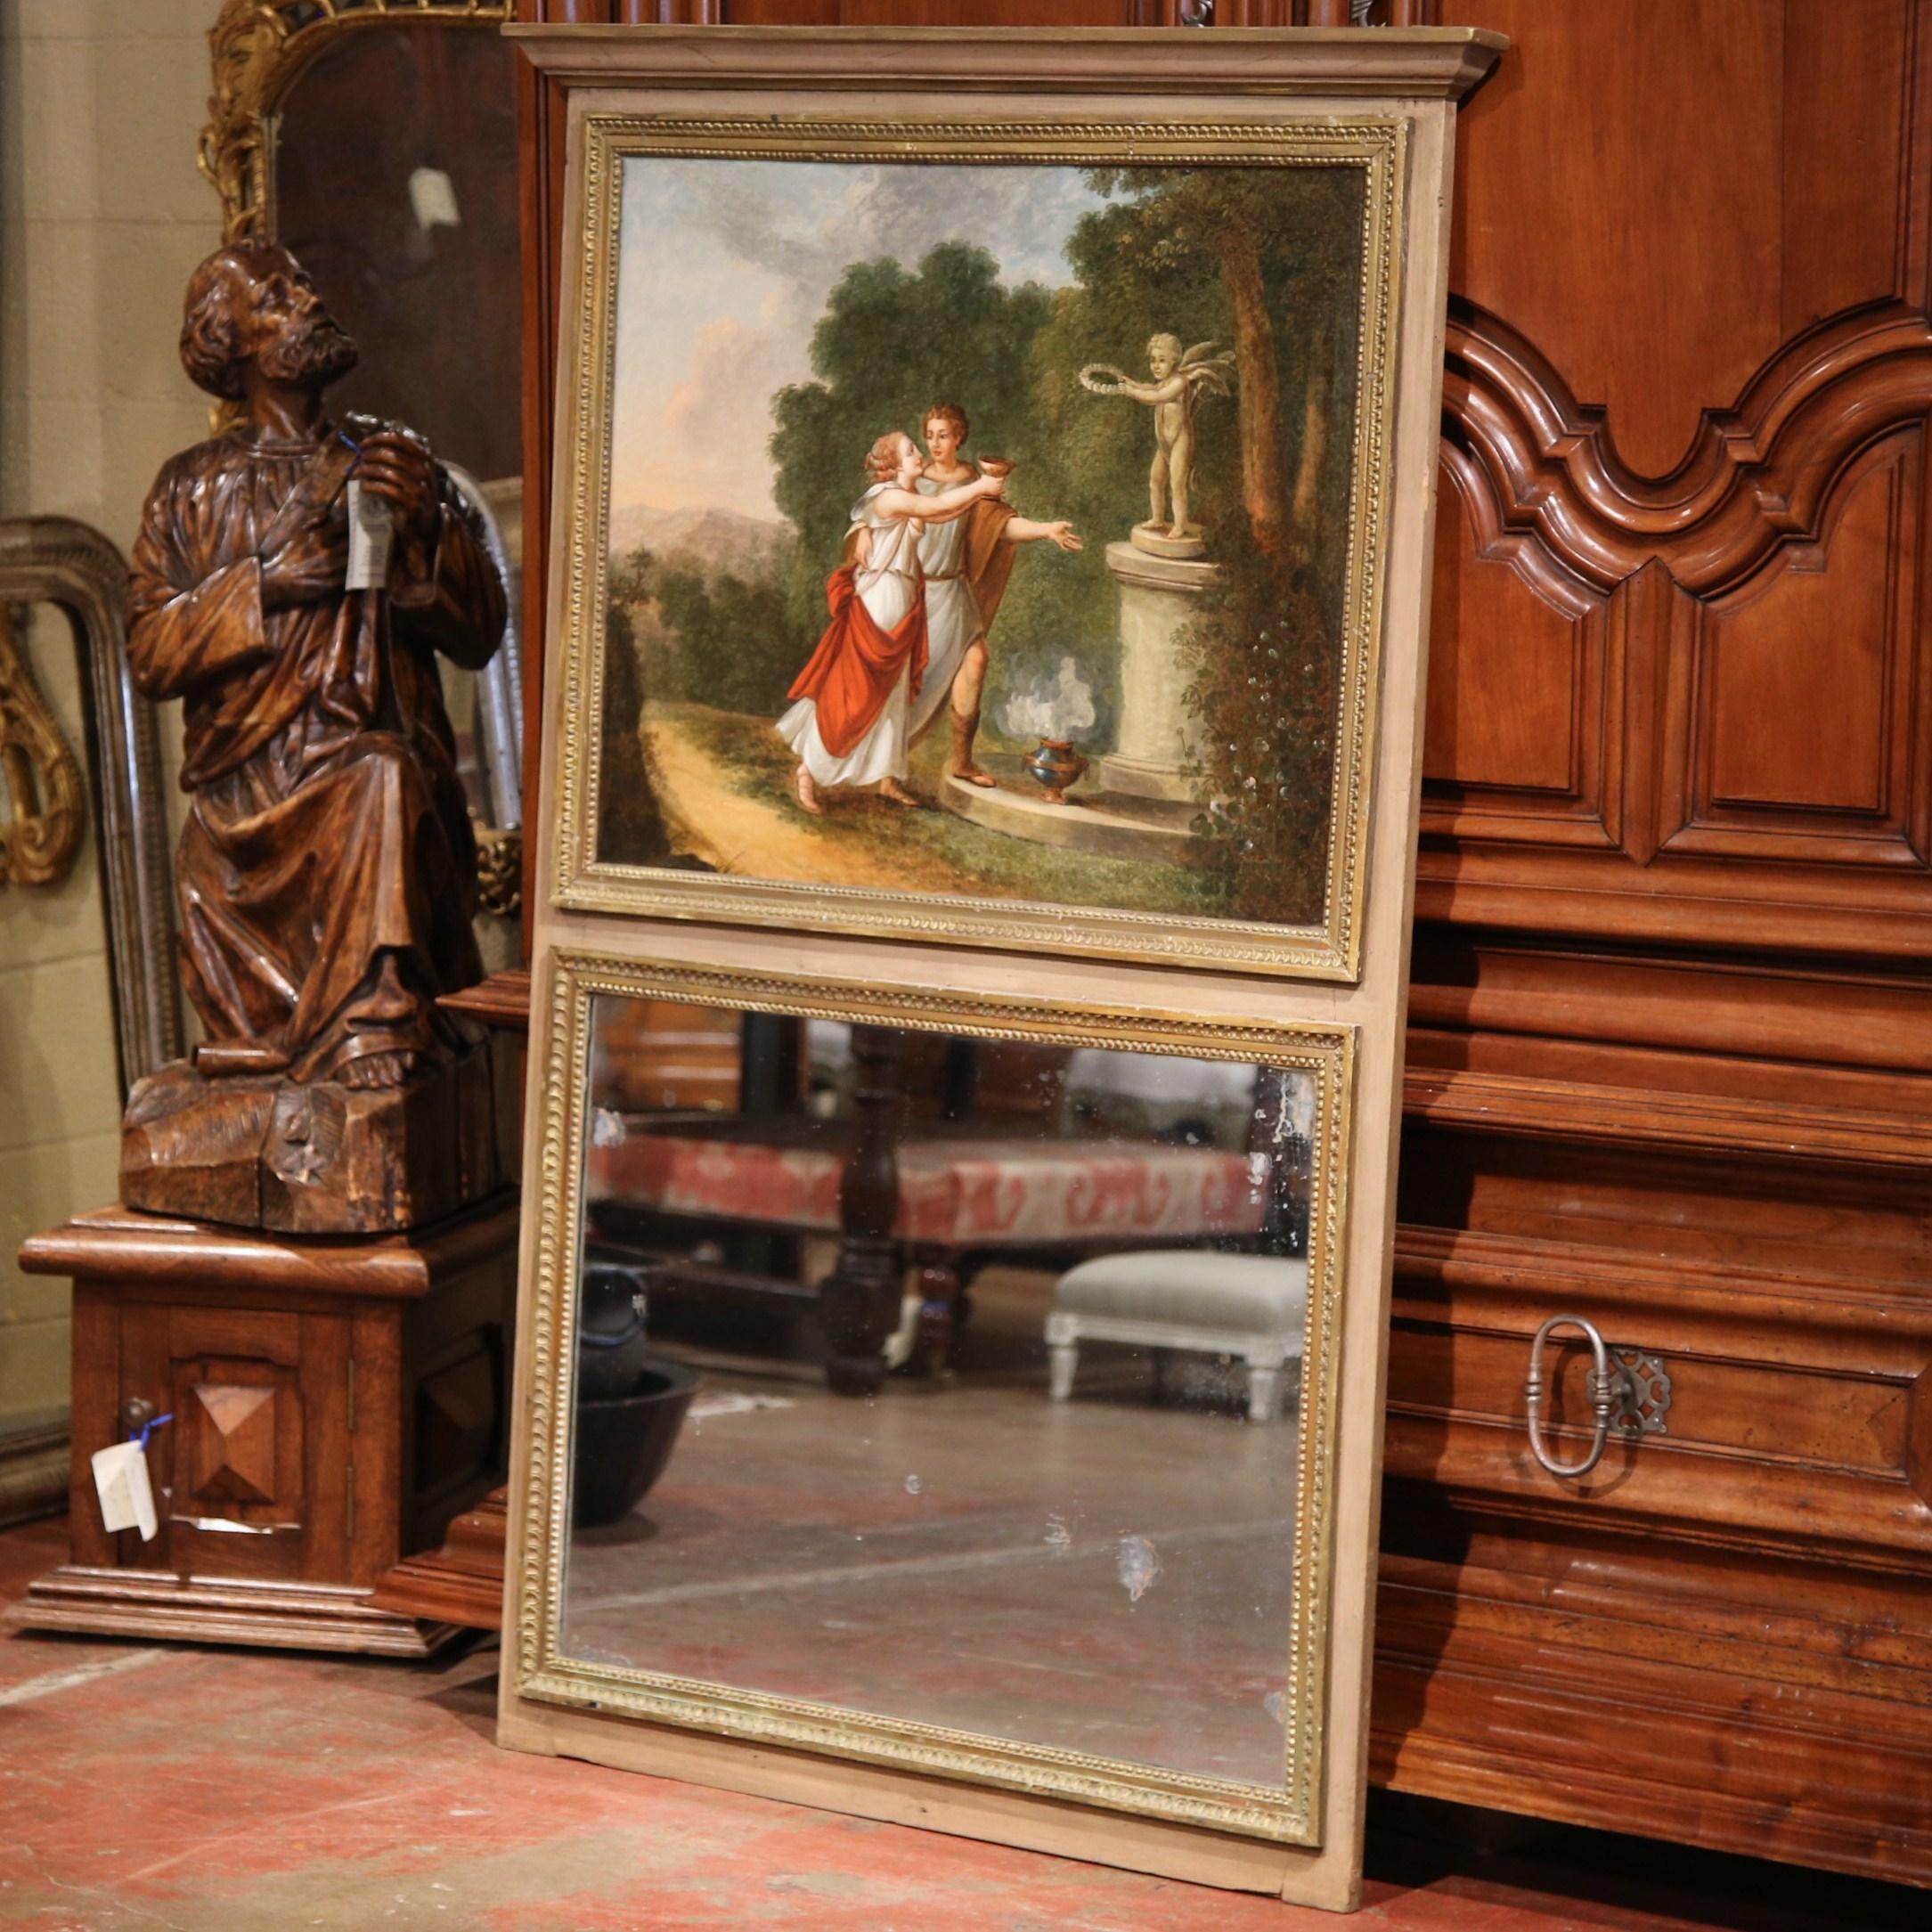 Cet élégant Trumeau ancien a été fabriqué dans le nord de la France, vers 1870. Le long miroir rectangulaire est surmonté d'une toile carrée peinte à la main représentant une scène mythologique. La composition montre deux personnes vêtues de